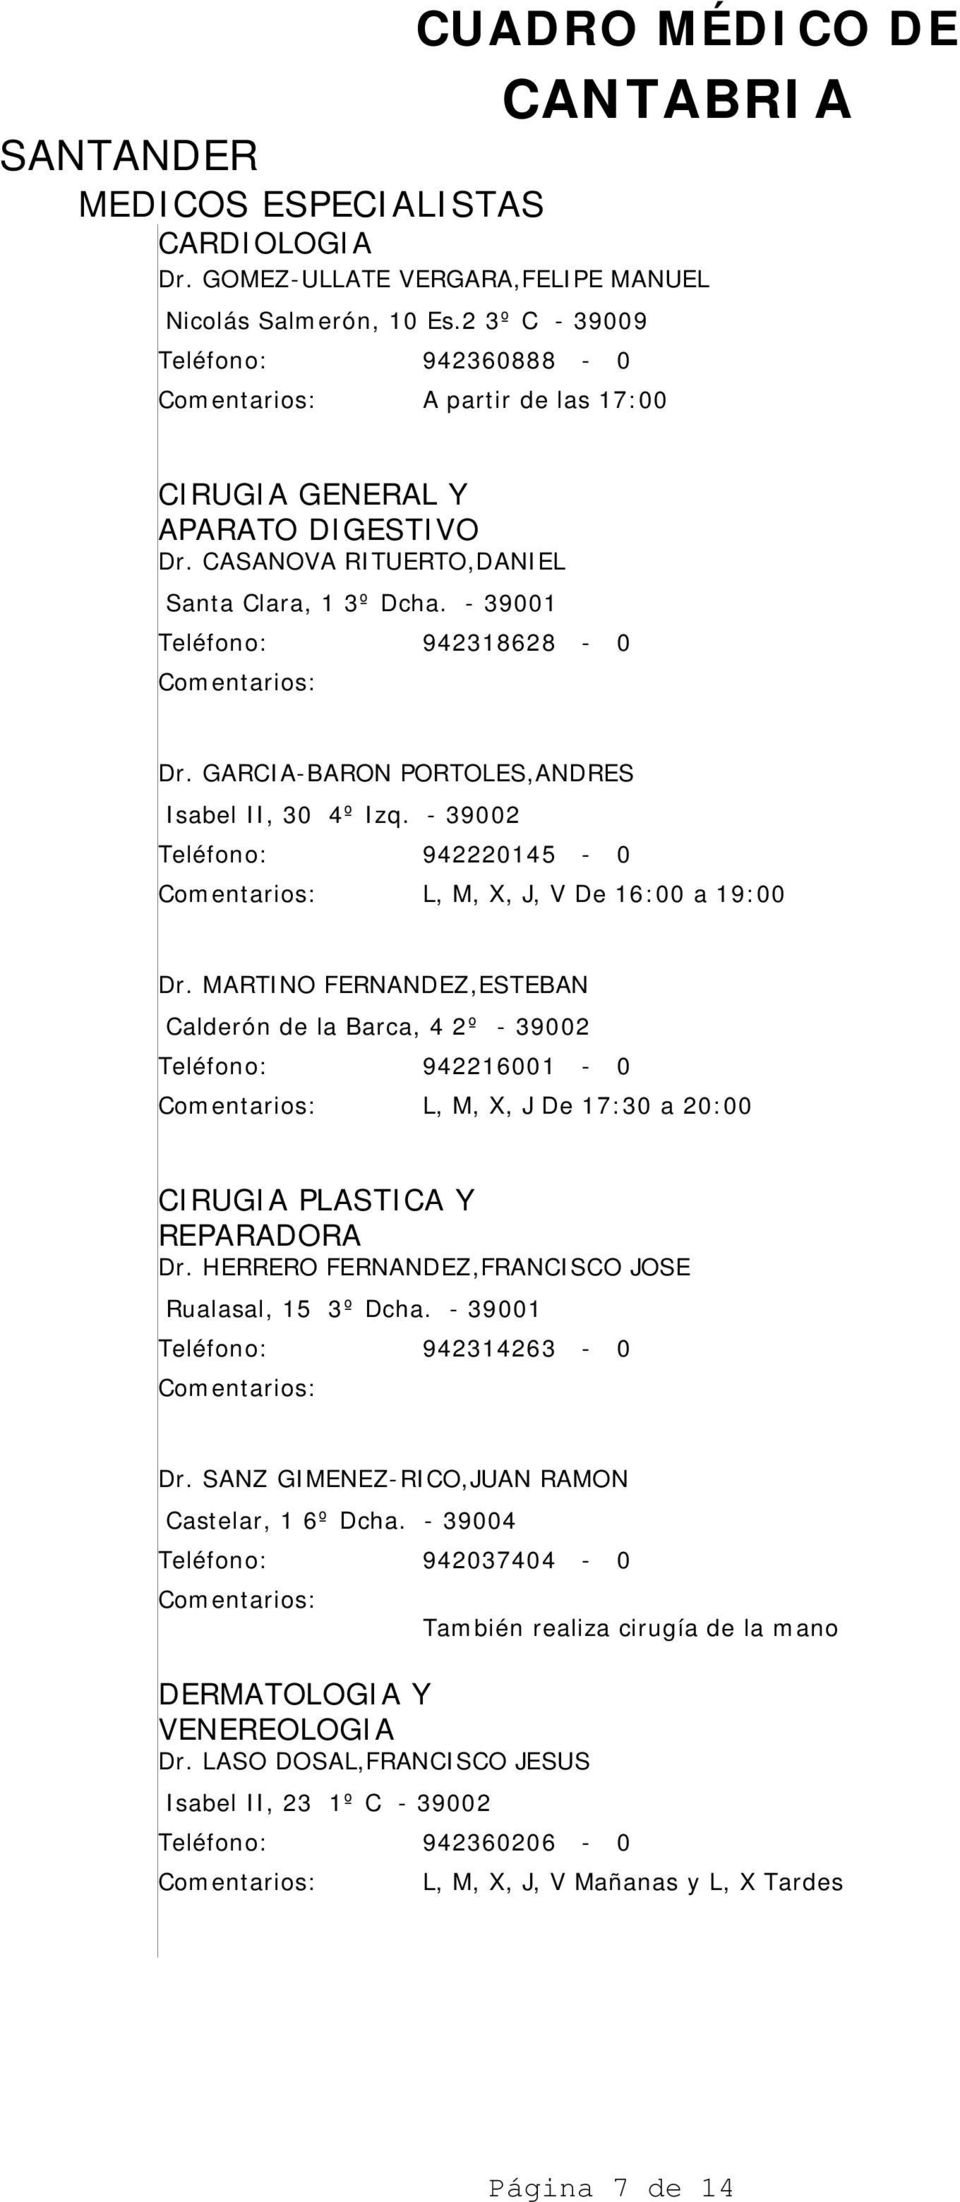 MARTINO FERNANDEZ,ESTEBAN Calderón de la Barca, 4 2º - 39002 942216001-0 L, M, X, J De 17:30 a 20:00 CIRUGIA PLASTICA Y REPARADORA Dr. HERRERO FERNANDEZ,FRANCISCO JOSE Rualasal, 15 3º Dcha.